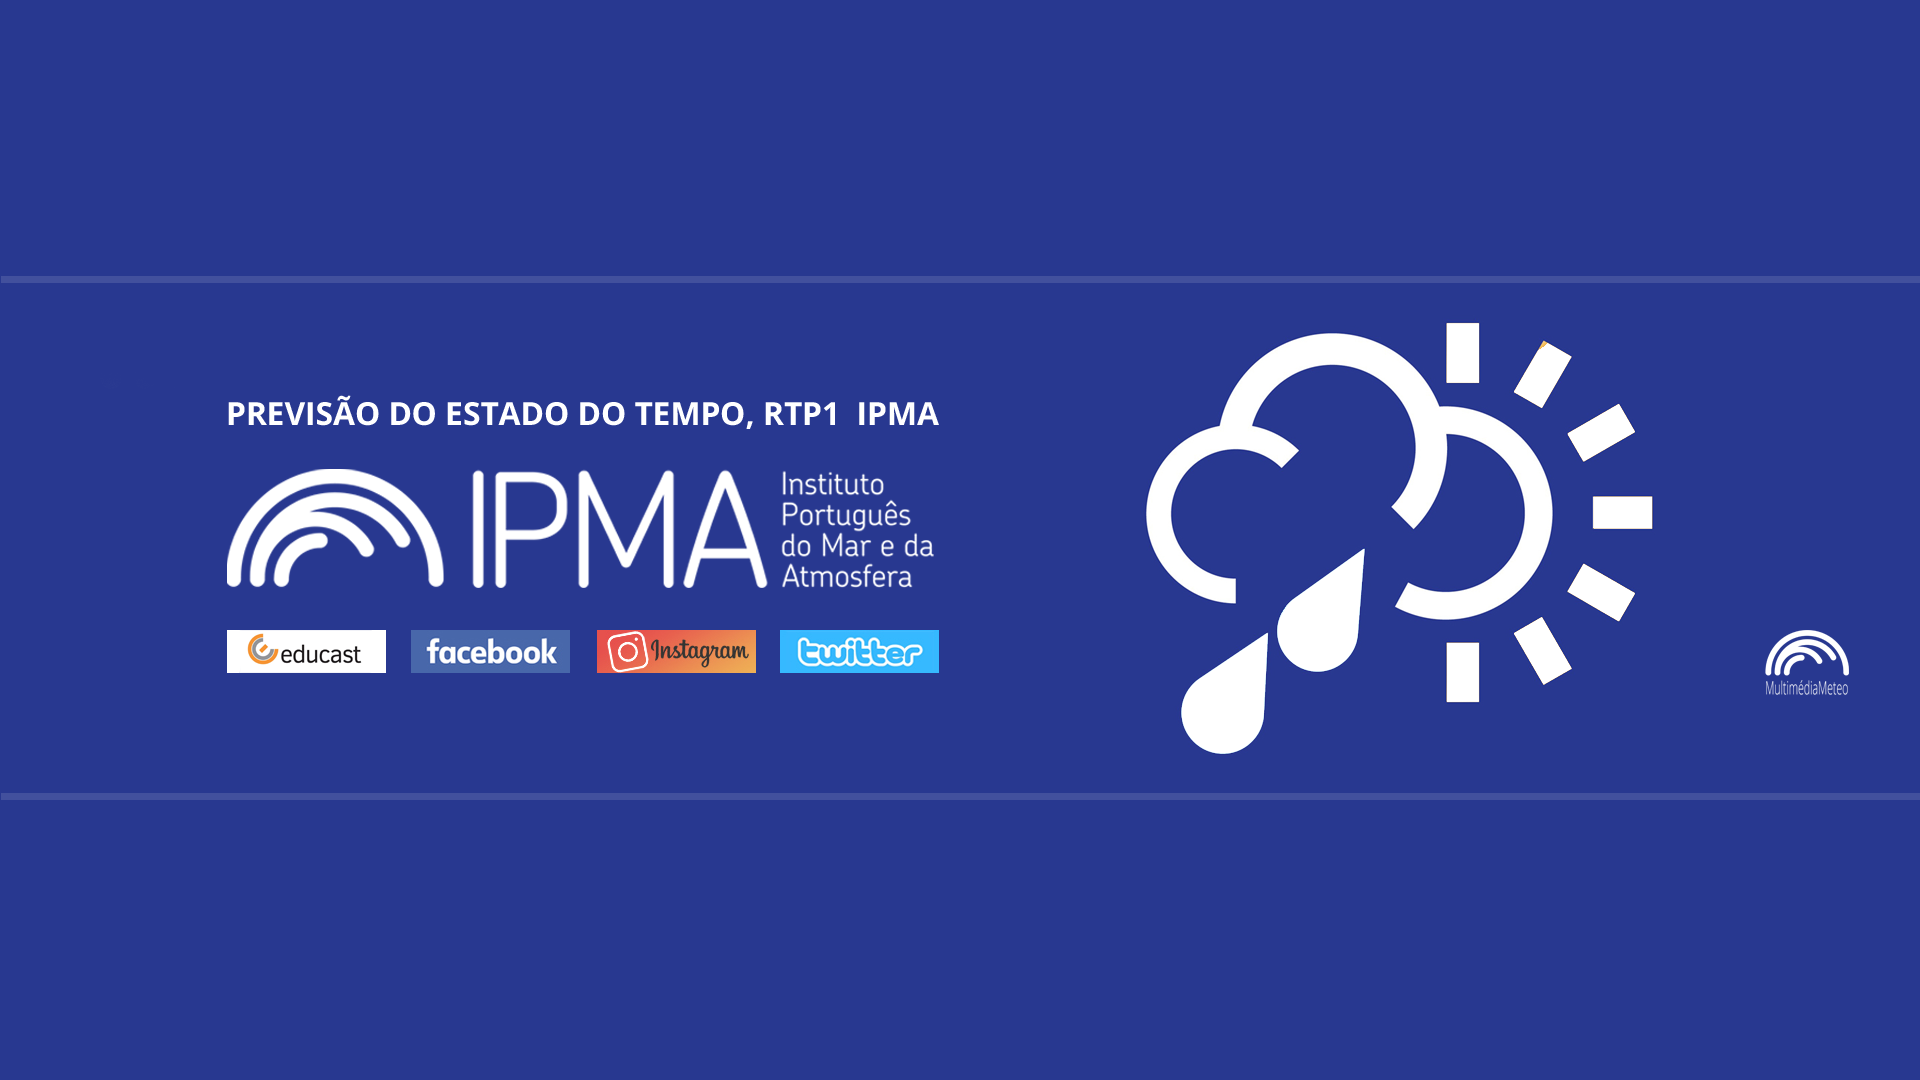  Previsão do estado do tempo, RTP1, 02-02-2022, IPMA.